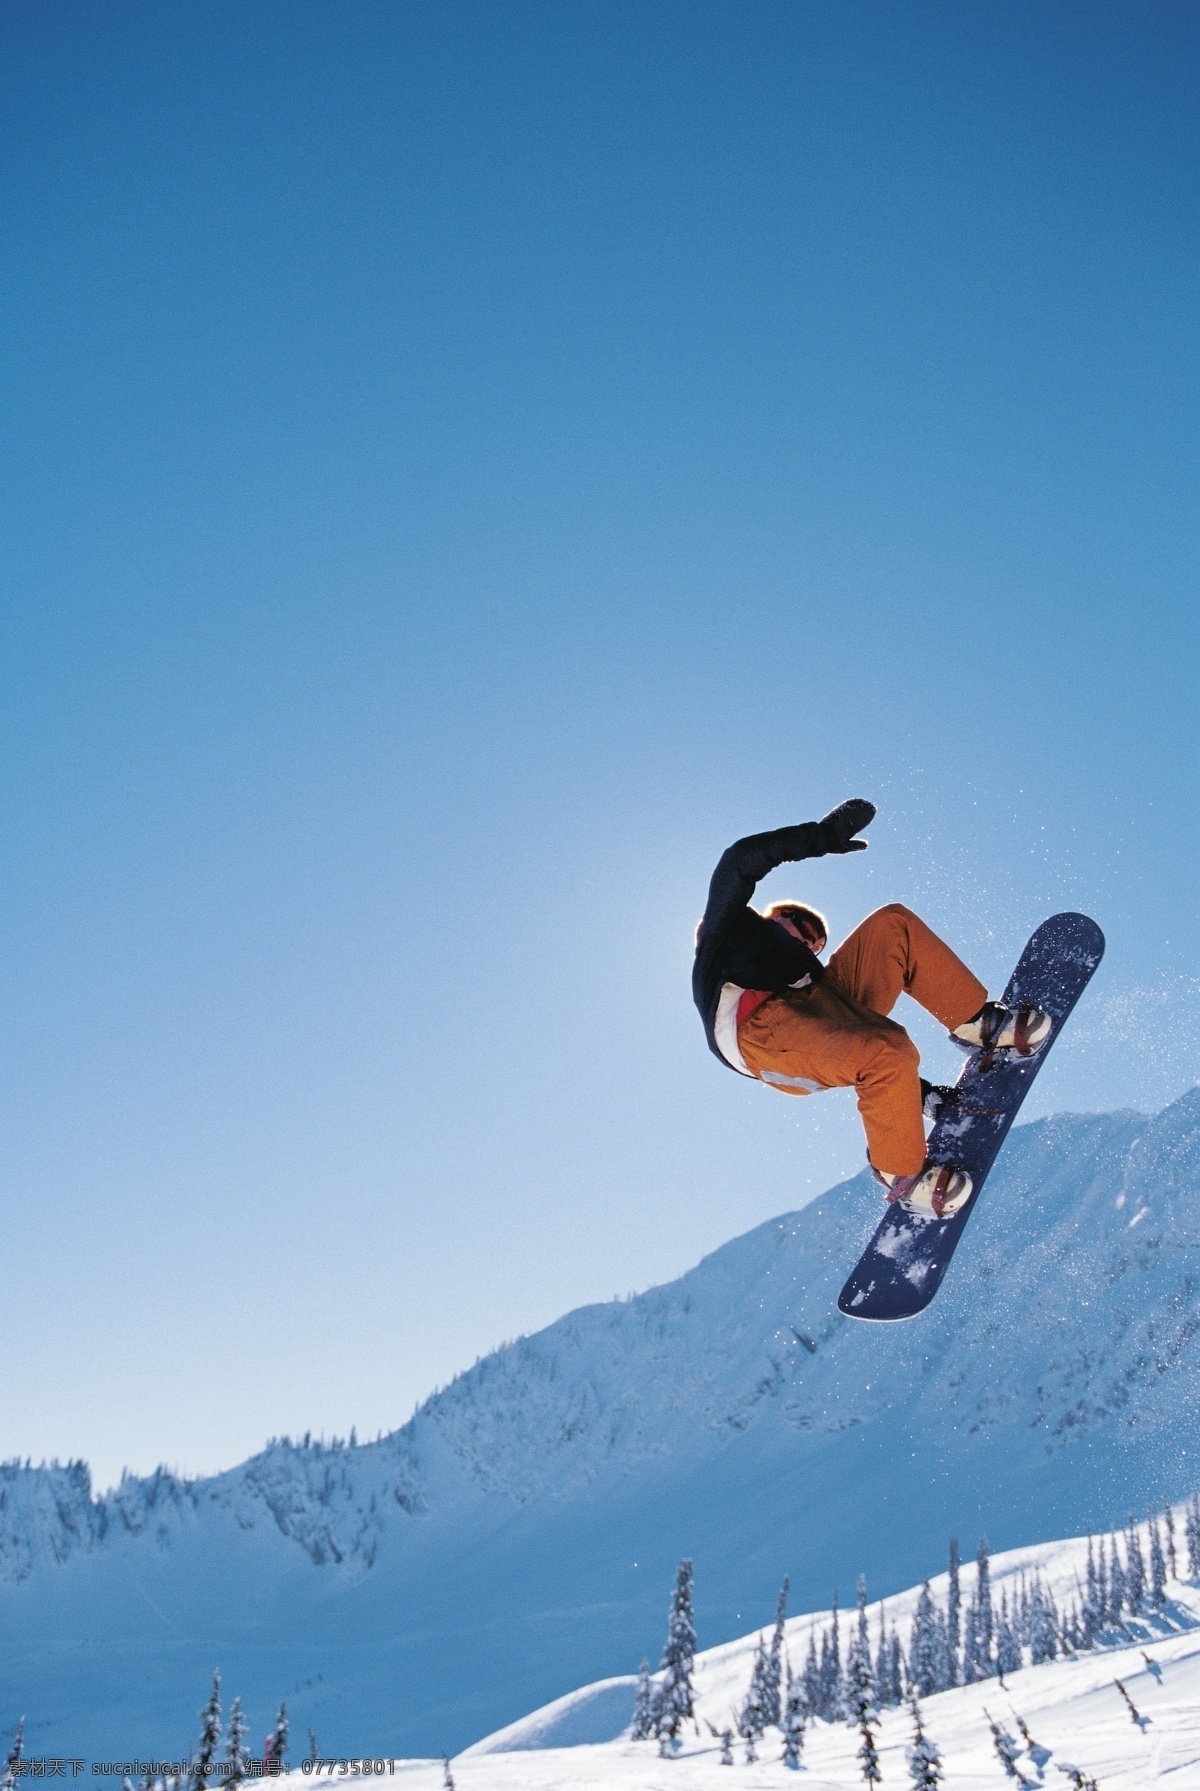 腾空 飞跃 滑雪 运动员 冬天 雪地运动 划雪运动 极限运动 体育项目 腾空飞跃 运动图片 生活百科 雪山 美丽 雪景 风景 摄影图片 高清图片 滑雪图片